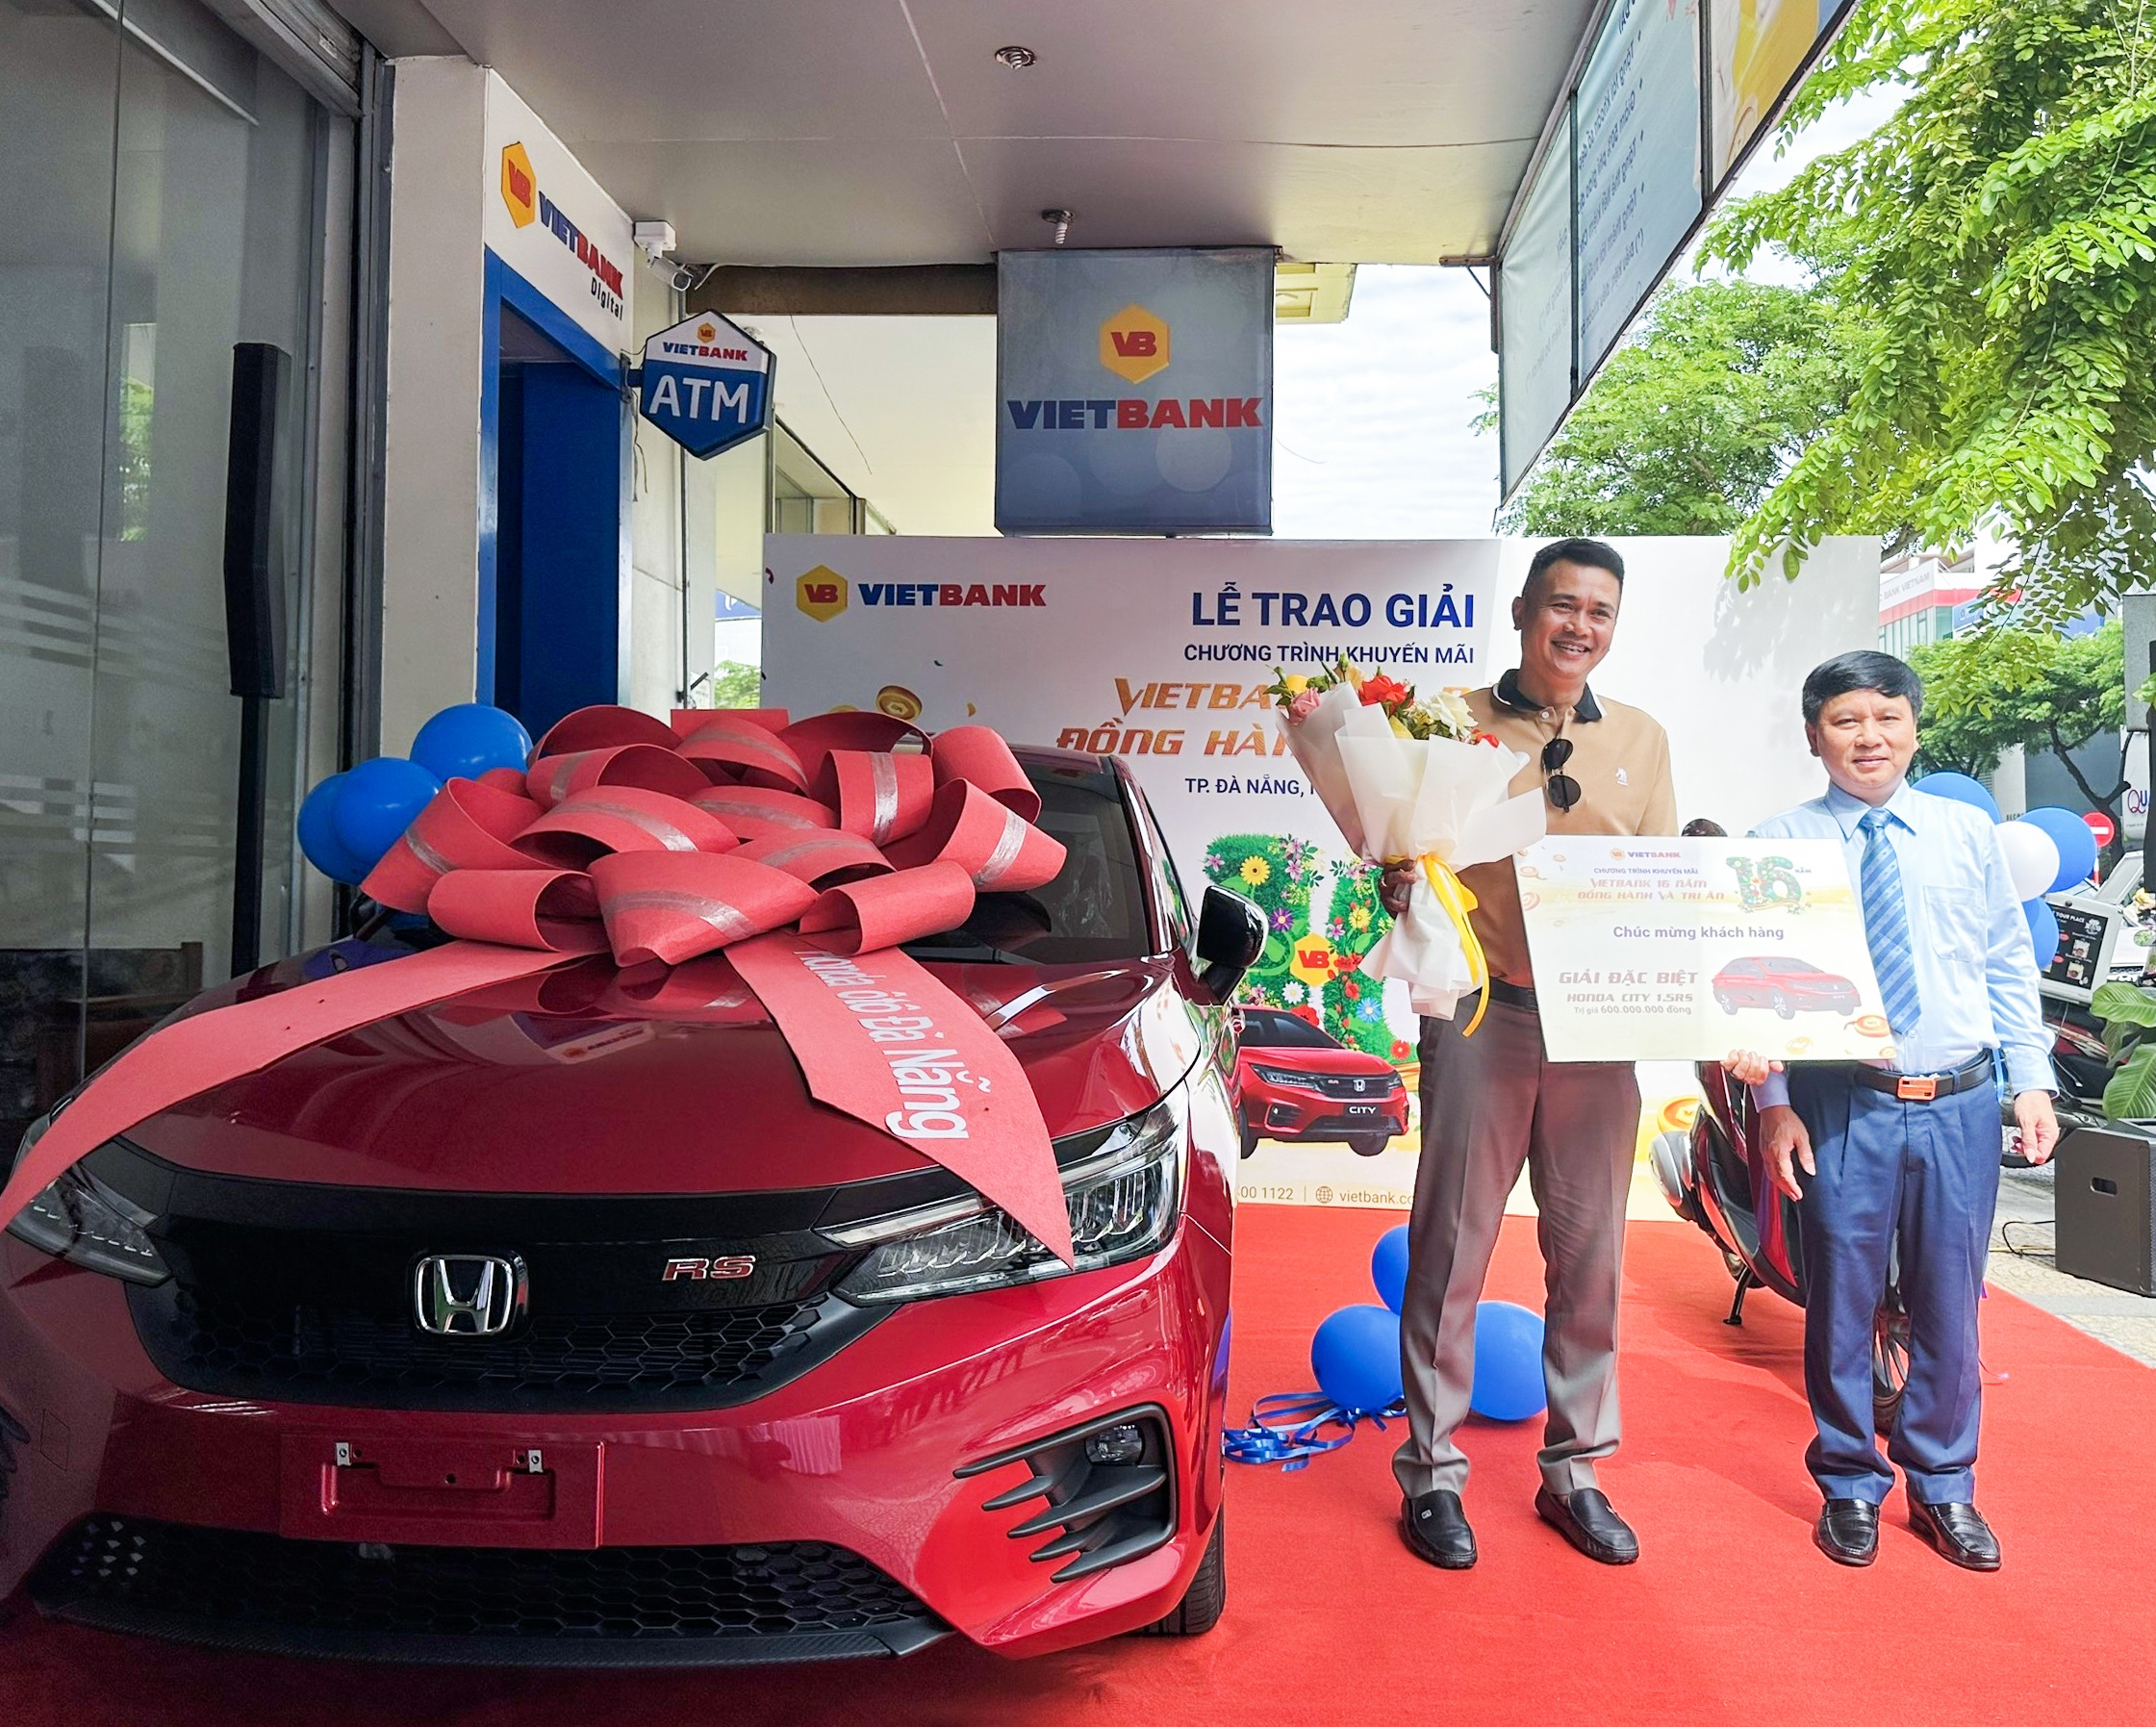 Khách hàng Ngô Ngọc Bình - giao dịch tại Vietbank Đà Nẵng nhận thưởng giải đặc biệt là xe ô tô Honda City 1.5GS của chương trình